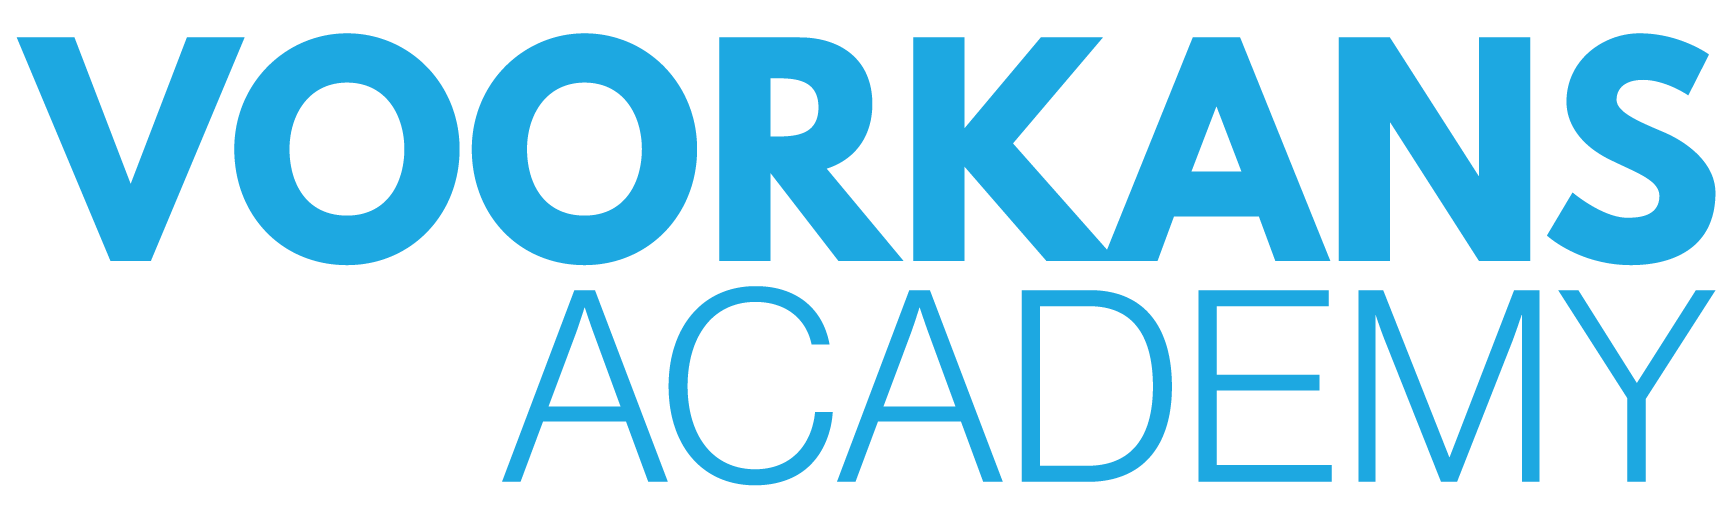 Voorkans Academy